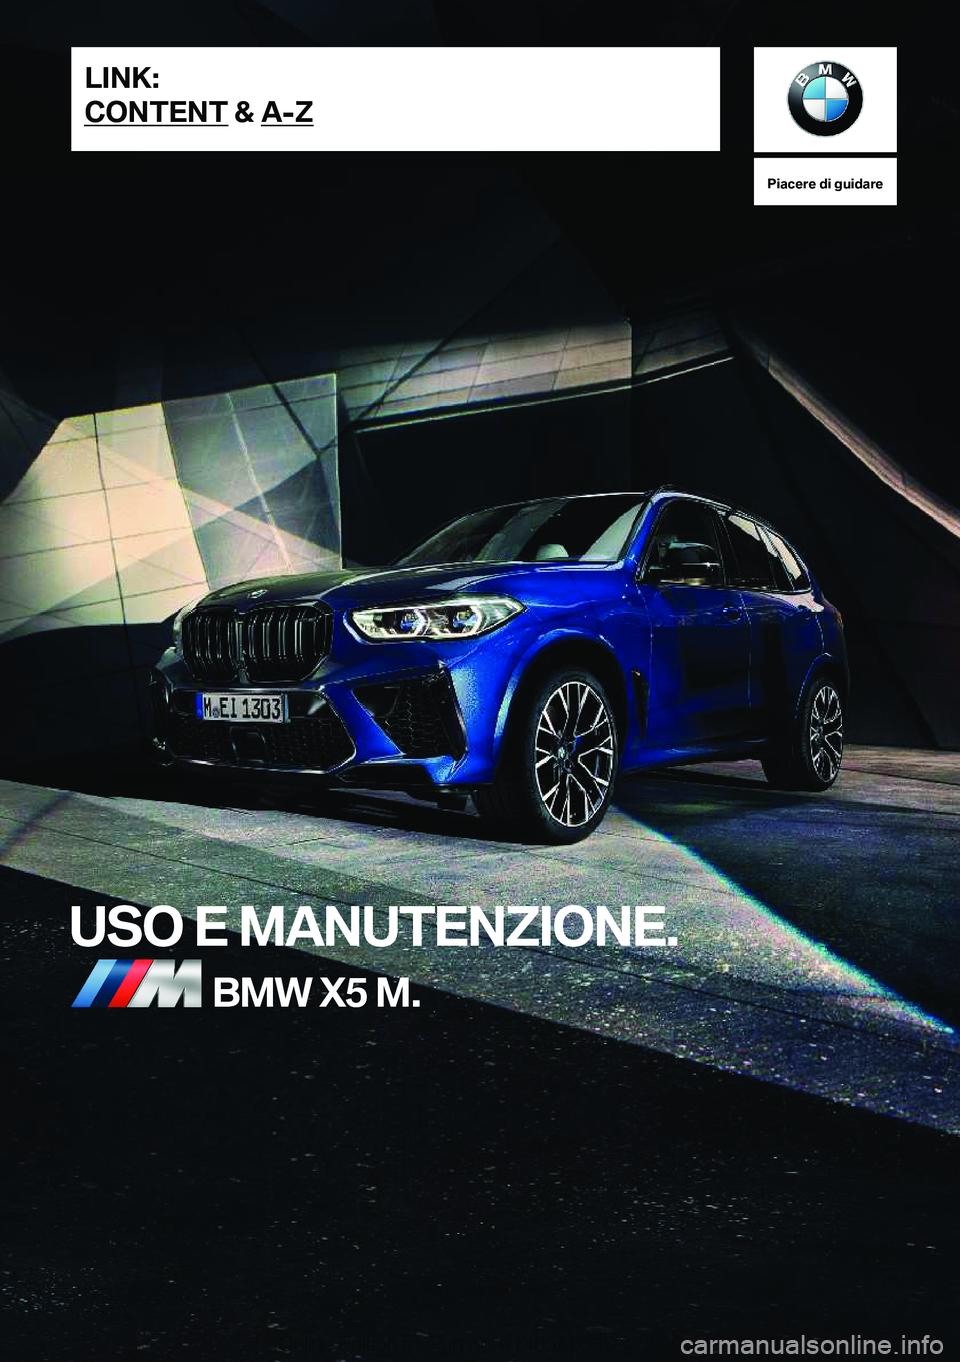 BMW X5 M 2020  Libretti Di Uso E manutenzione (in Italian) �P�i�a�c�e�r�e��d�i��g�u�i�d�a�r�e
�U�S�O��E��M�A�N�U�T�E�N�Z�I�O�N�E�.�B�M�W��X�5��M�.�L�I�N�K�:
�C�O�N�T�E�N�T��&��A�-�Z�O�n�l�i�n�e��E�d�i�t�i�o�n��f�o�r��P�a�r�t��n�o�.��0�1�4�0�5�A�0